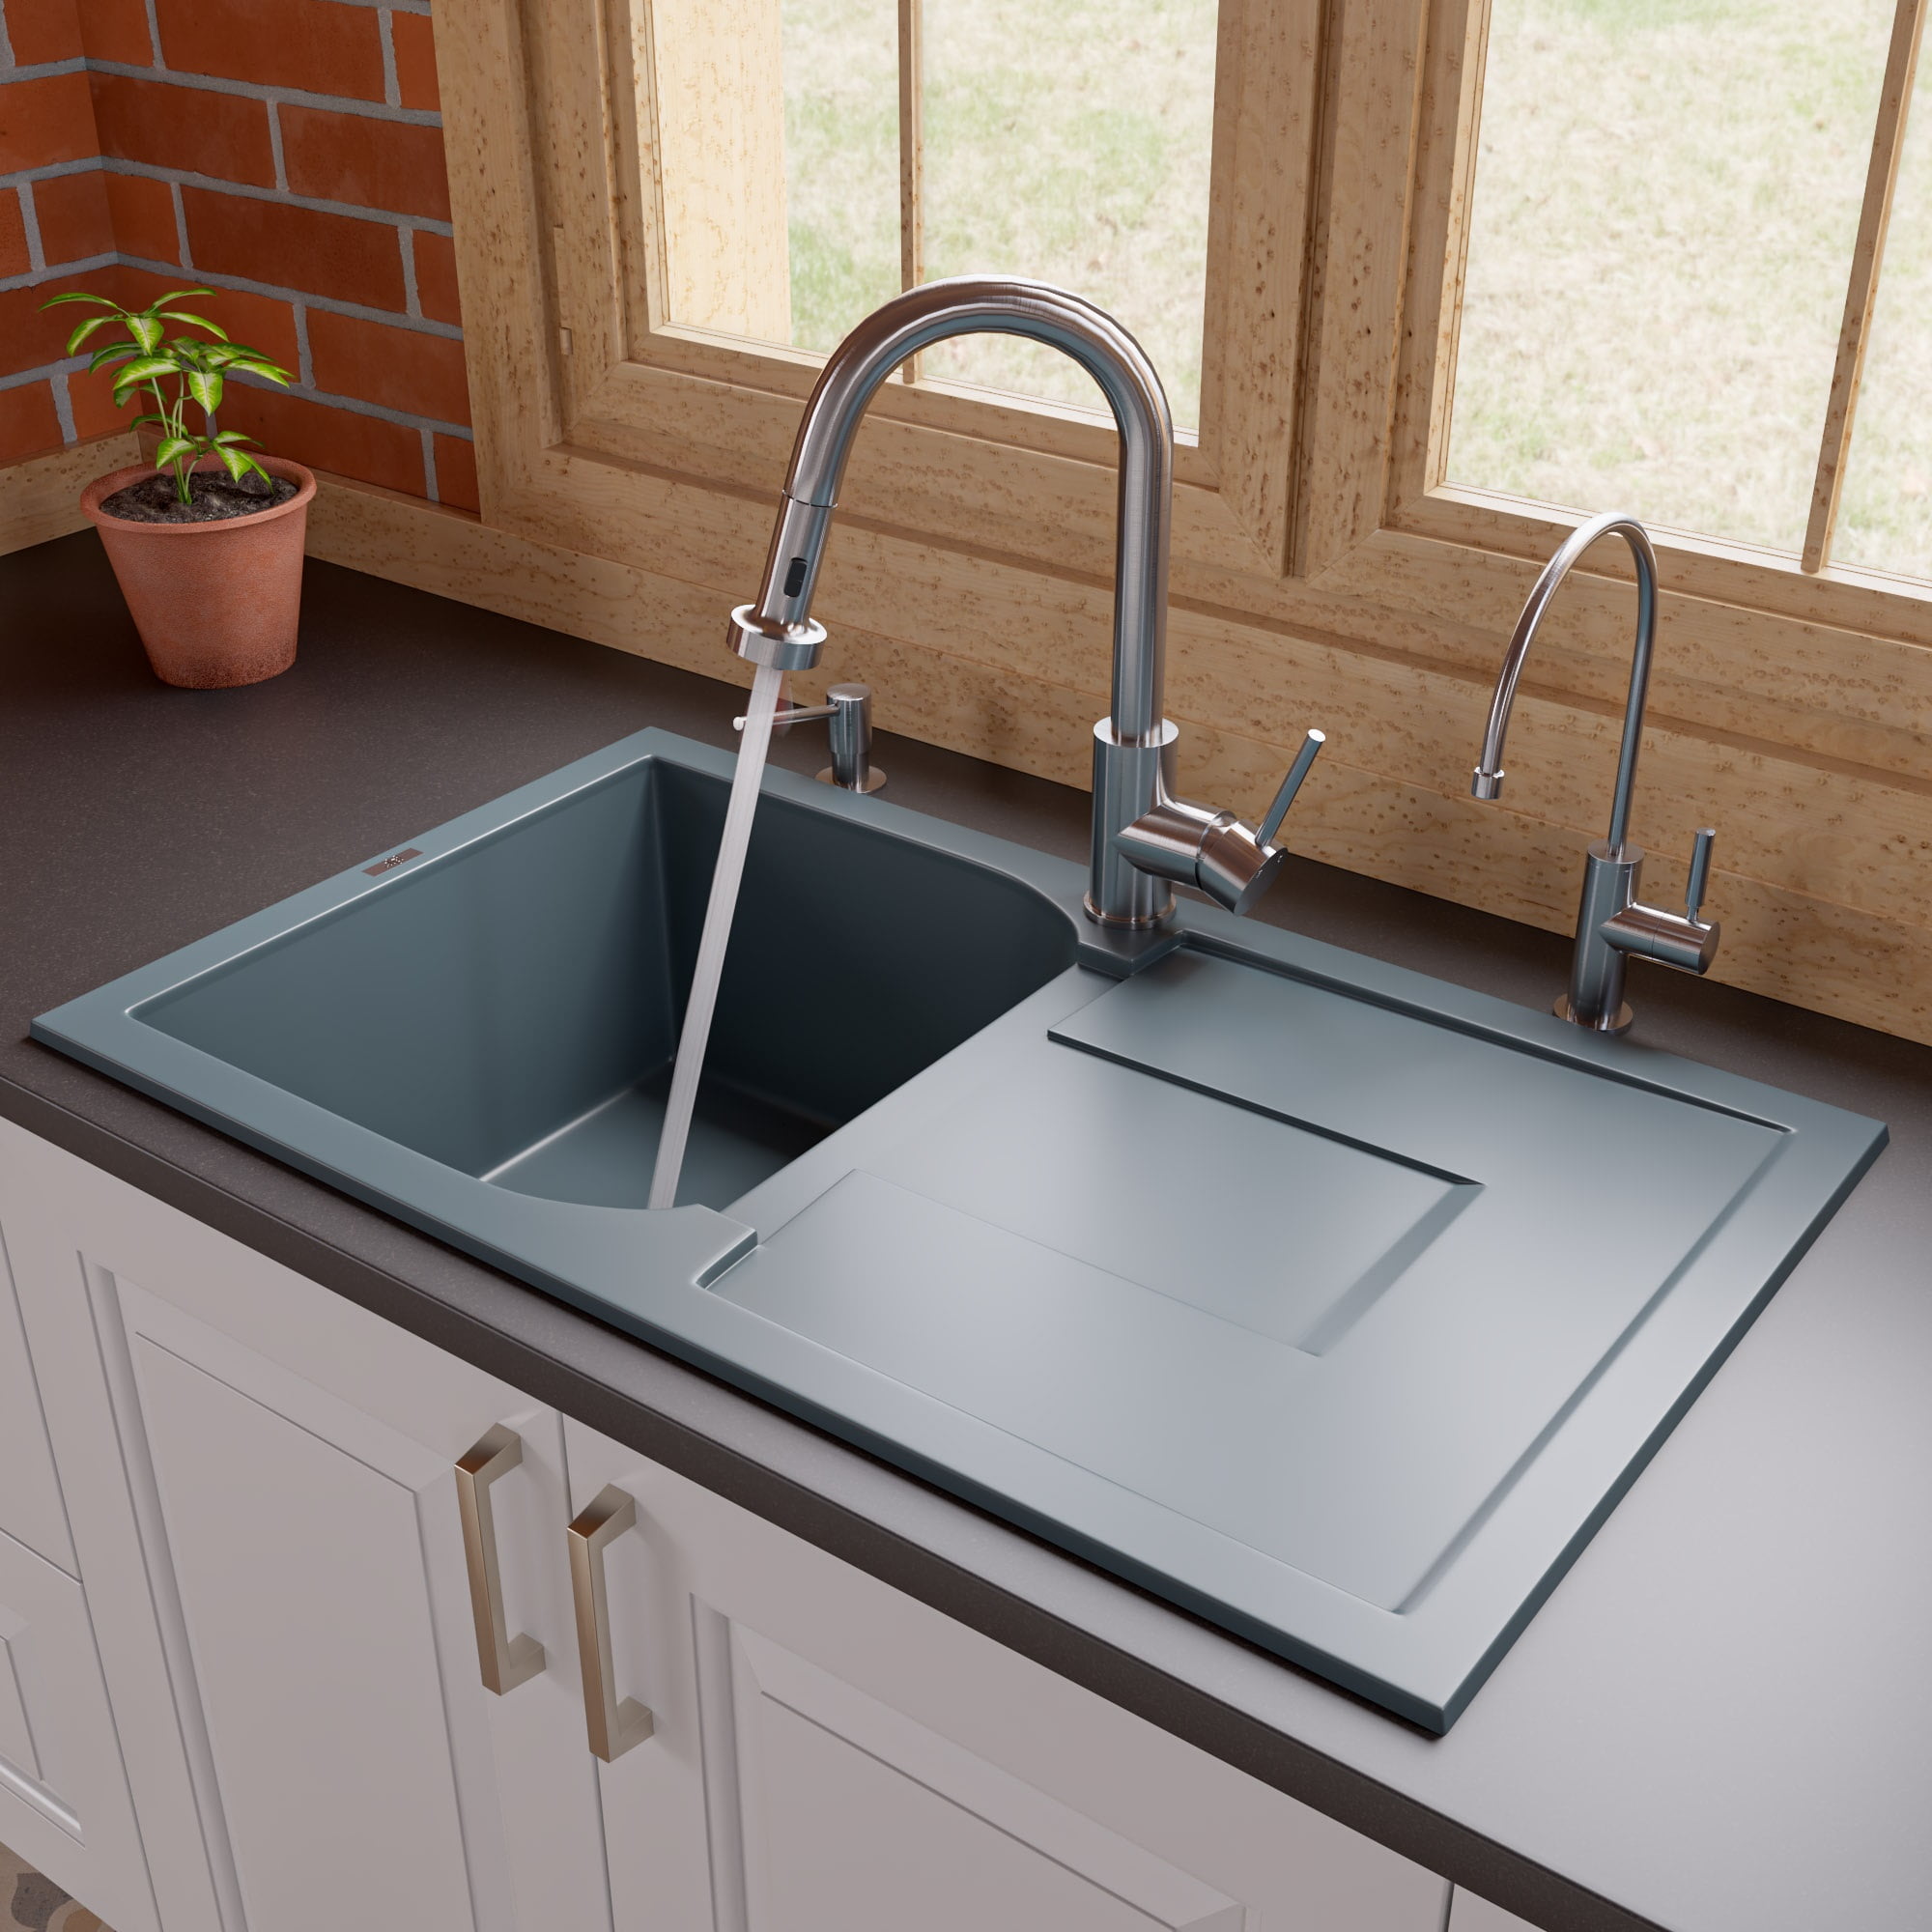 Picture of Alfi Brand AB1620DI-T Titanium 34 in. Single Bowl Granite Composite Kitchen Sink with Drainboard